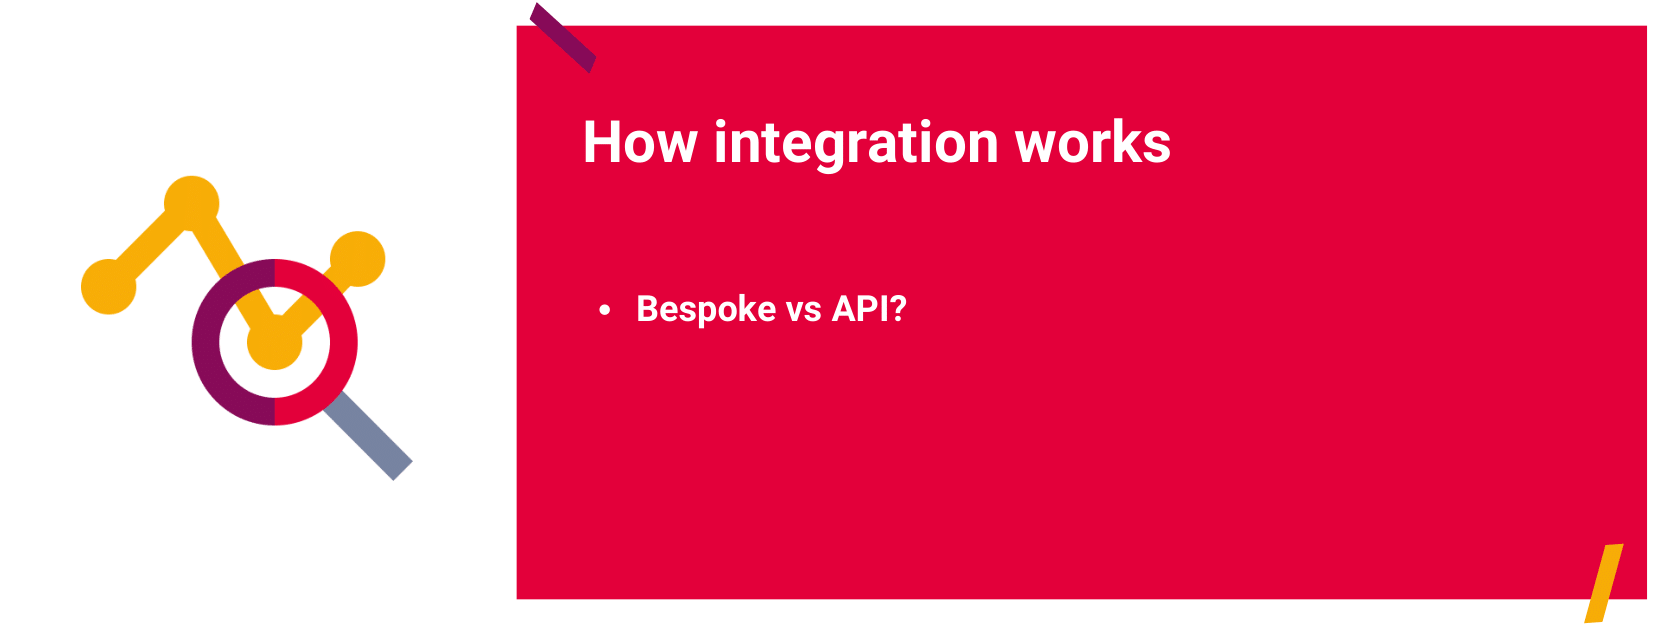 how integration works